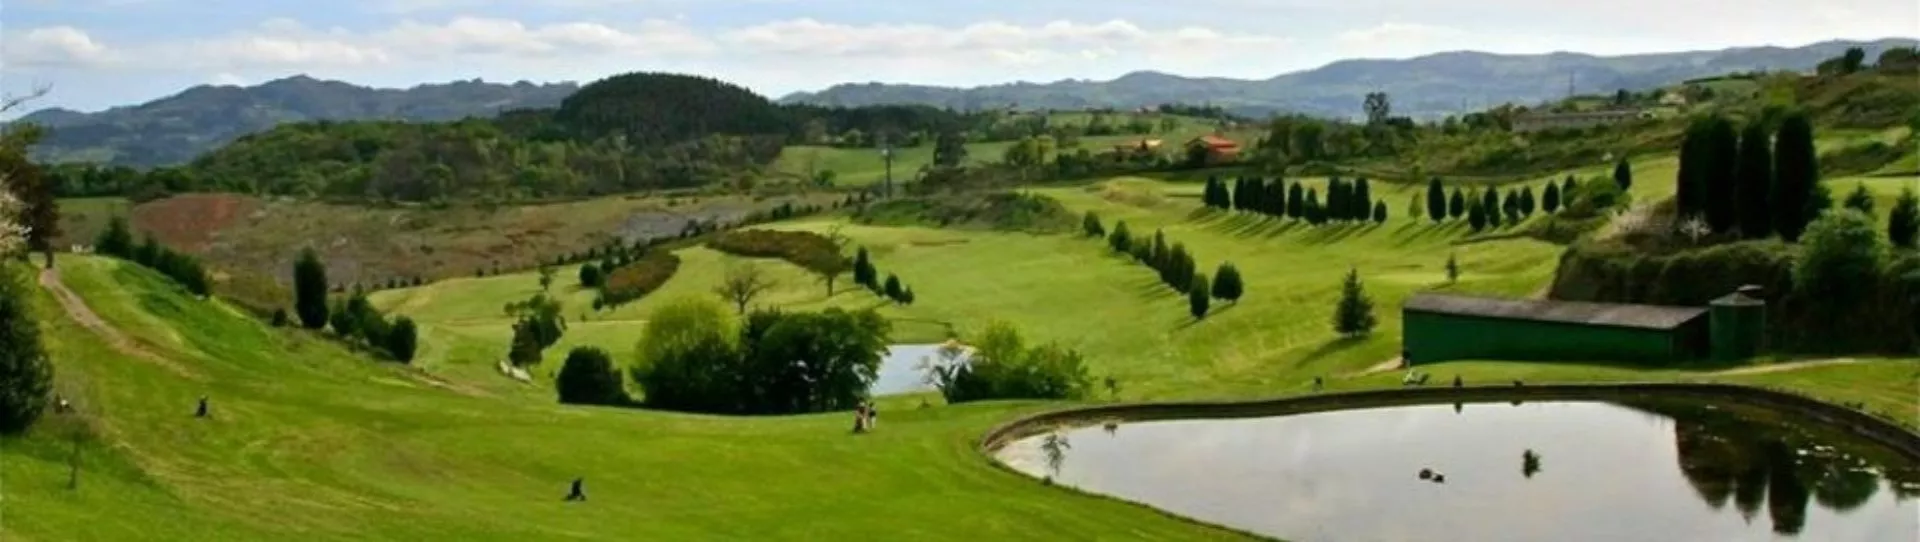 Spain golf courses - Villaviciosa Golf Course - Photo 1